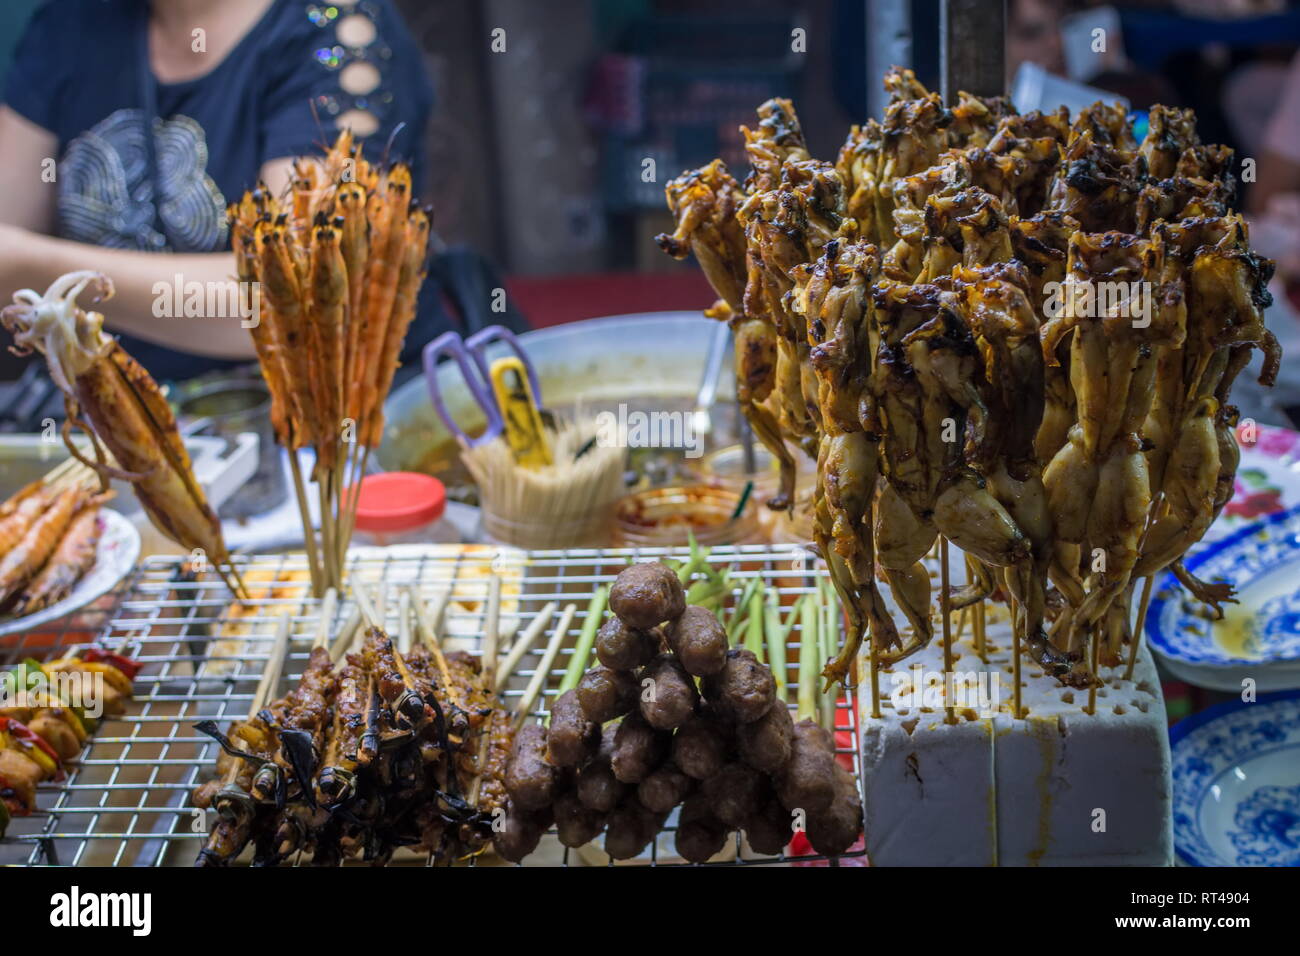 Brochettes de grenouilles poêlées, Vietnamien Asian street food en Thaïlande Banque D'Images